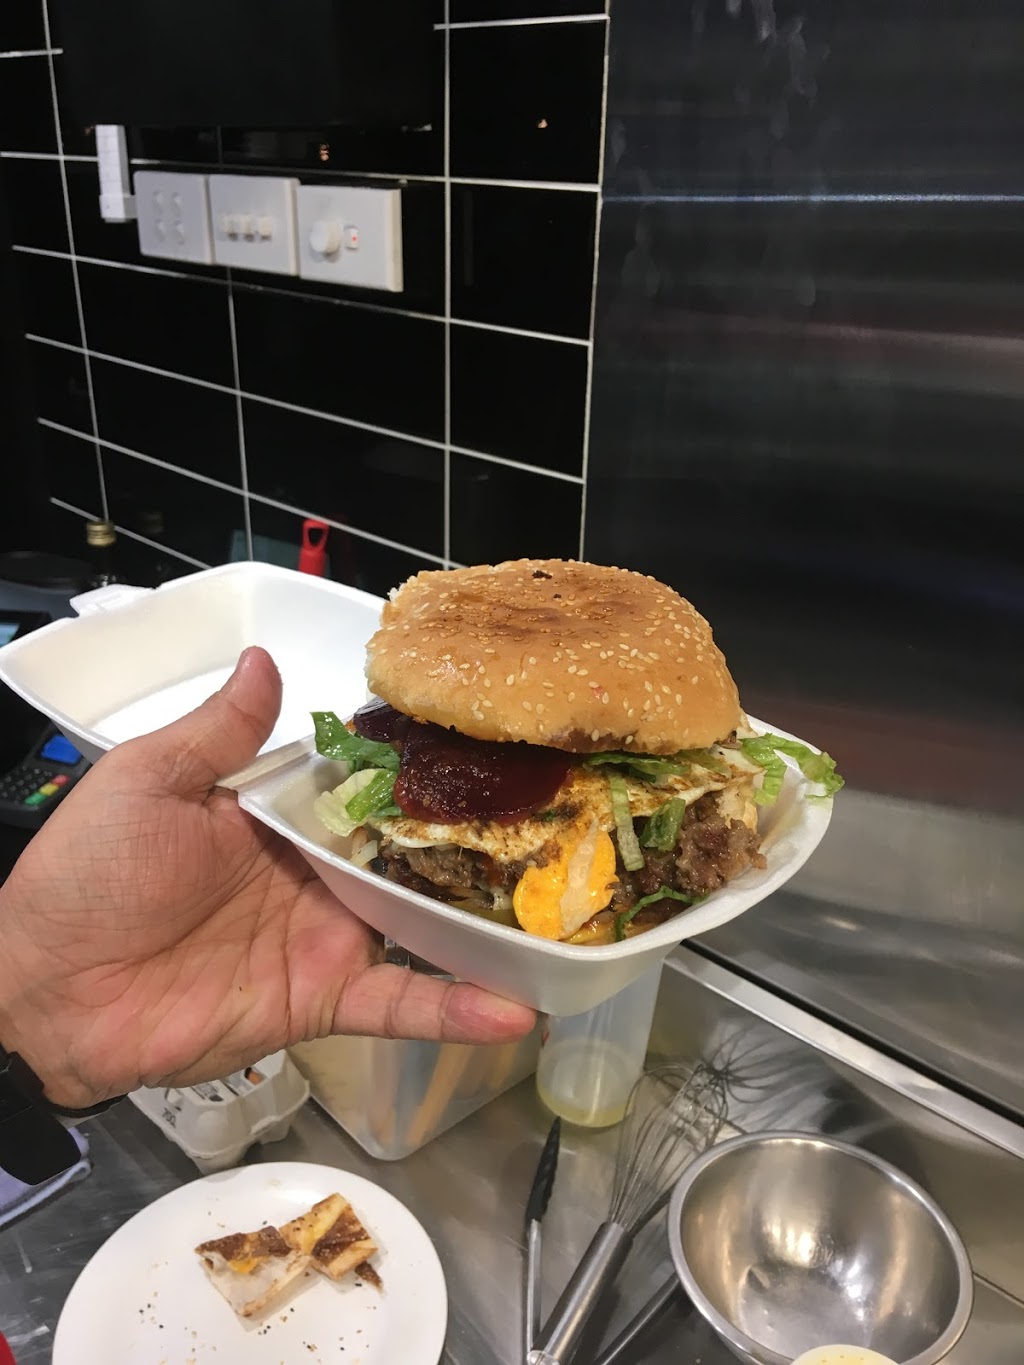 Kebab Kingz | meal delivery | 438 Spencer St, West Melbourne VIC 3003, Australia | 0449858606 OR +61 449 858 606